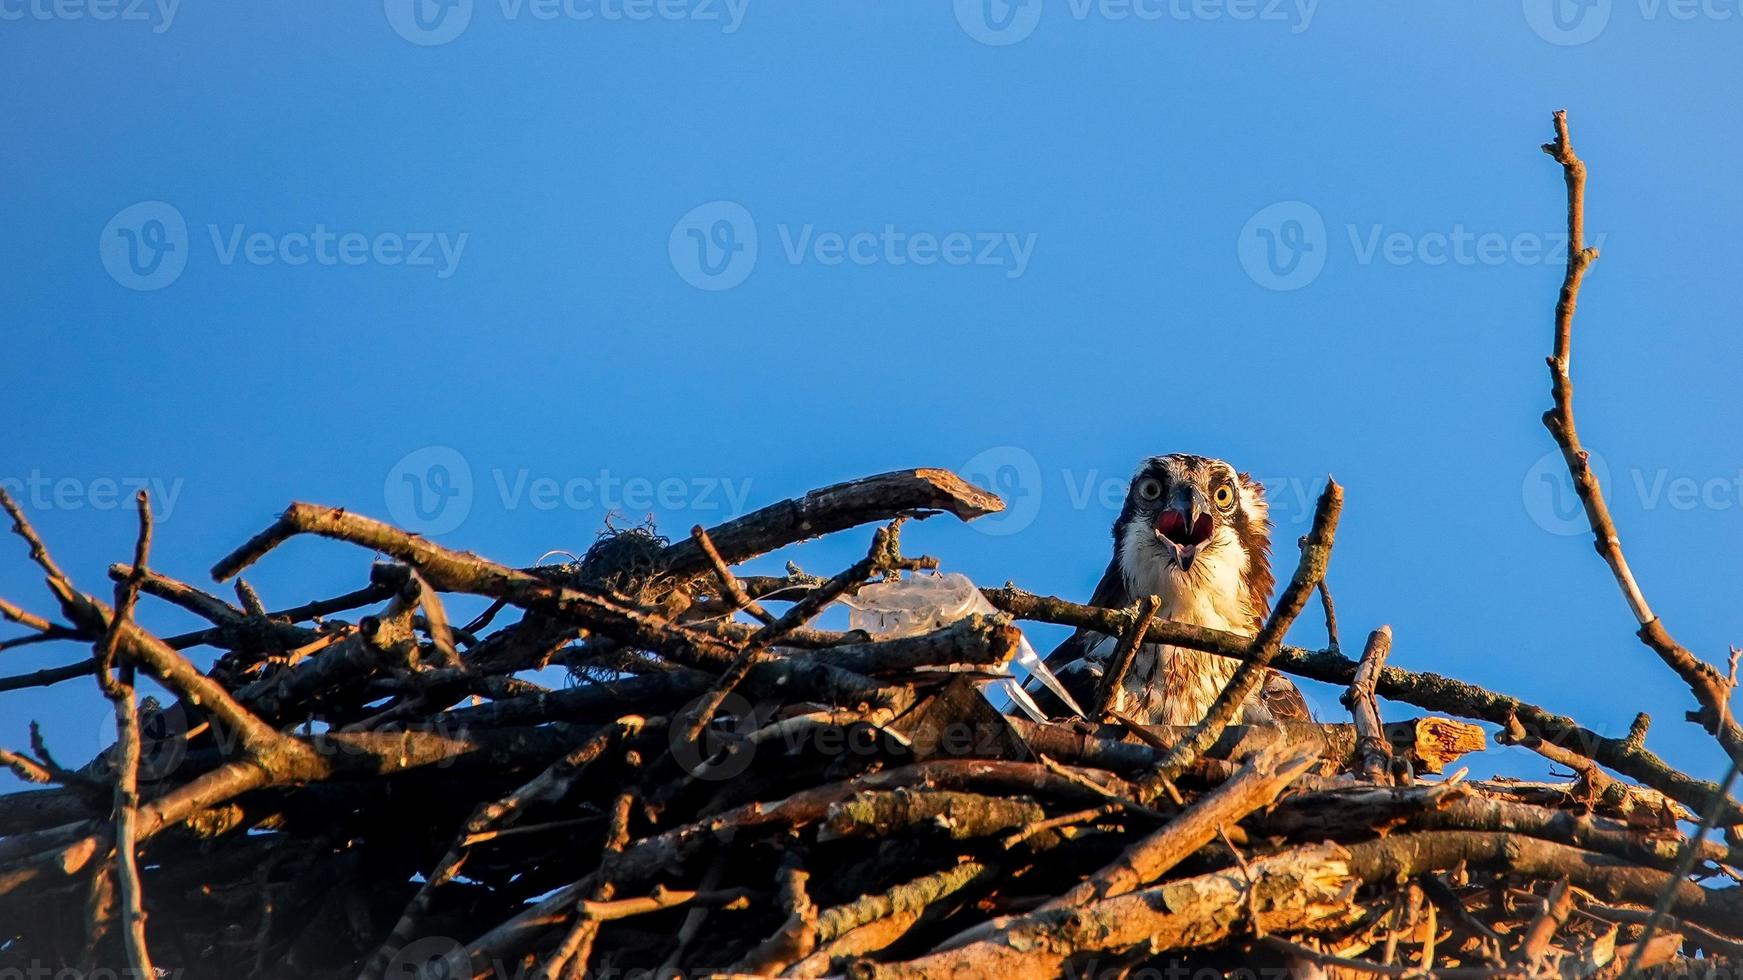 visarend vrouwtje zit in nest met blauwe lucht foto